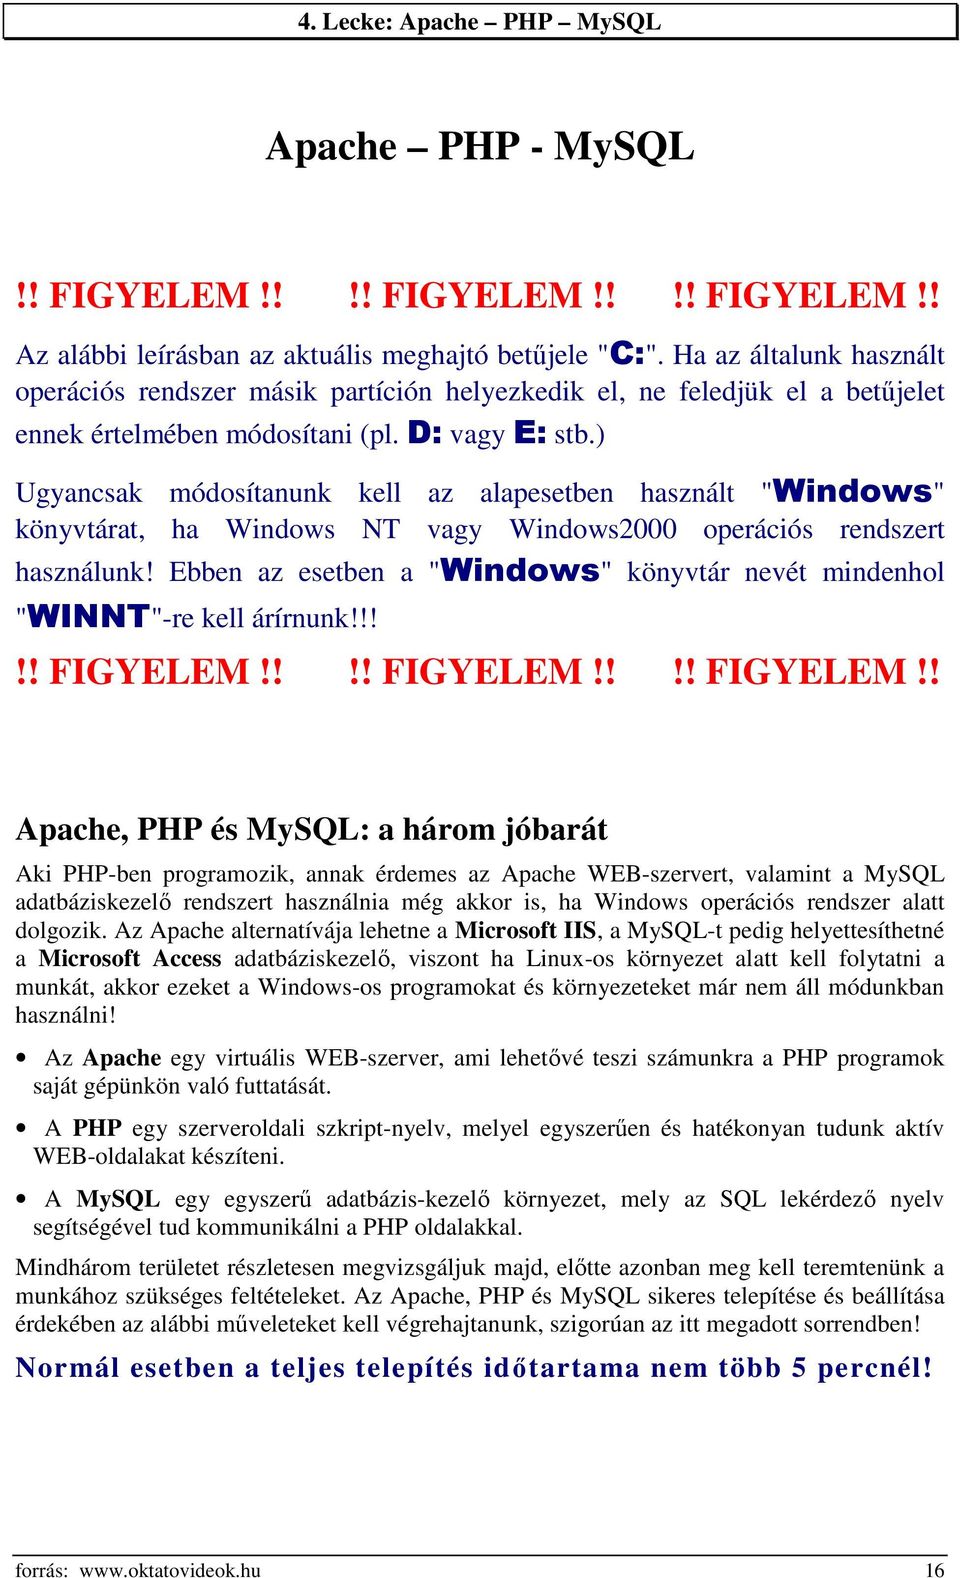 ) Ugyancsak módosítanunk kell az alapesetben használt "Windows" könyvtárat, ha Windows NT vagy Windows2000 operációs rendszert használunk!